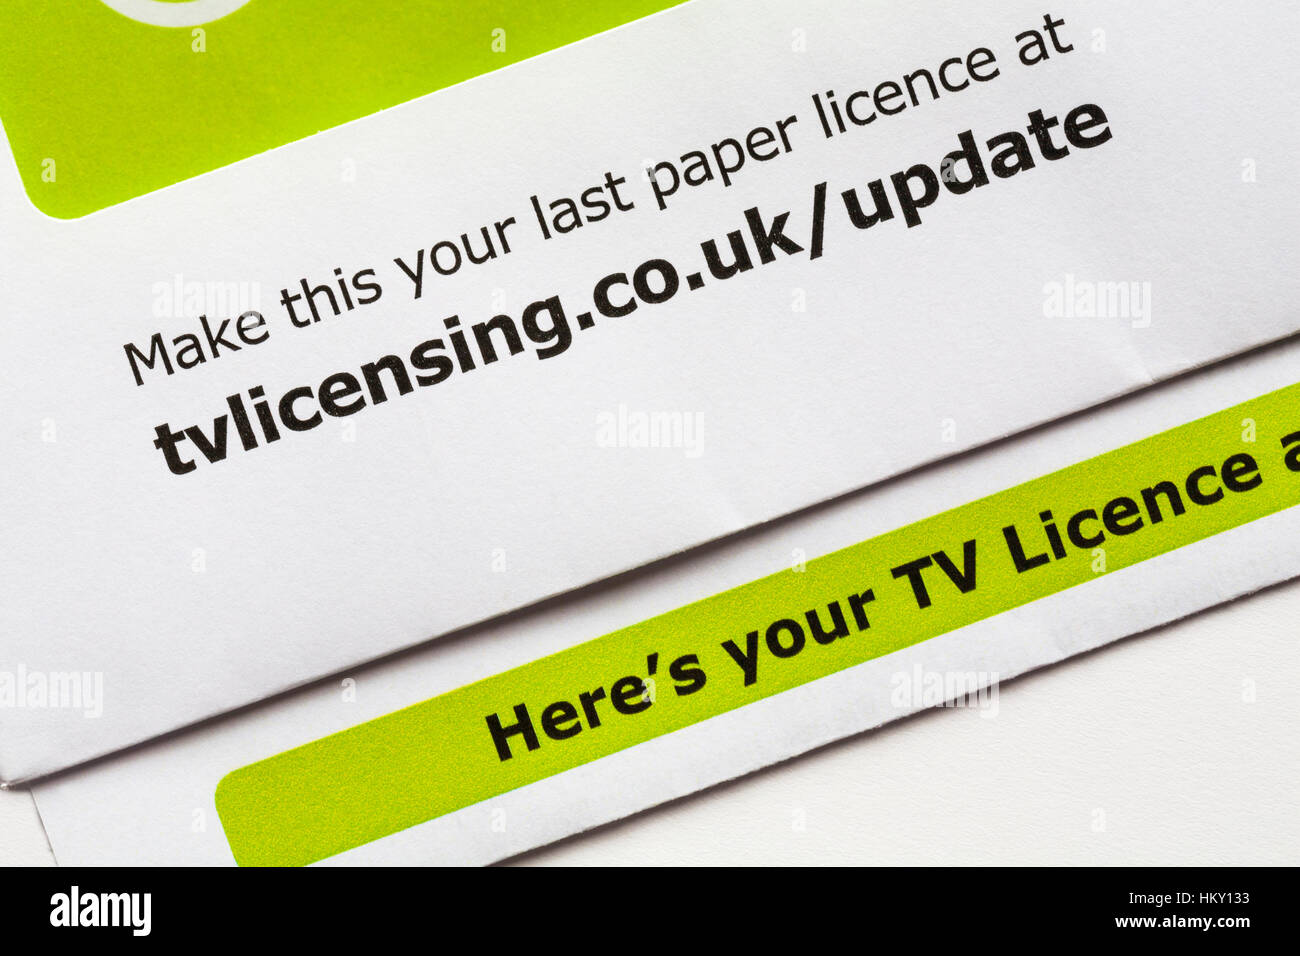 Hacer esta tu última licencia en papel tvlicensing - detalles sobre la correspondencia sobre licencia de TV Foto de stock